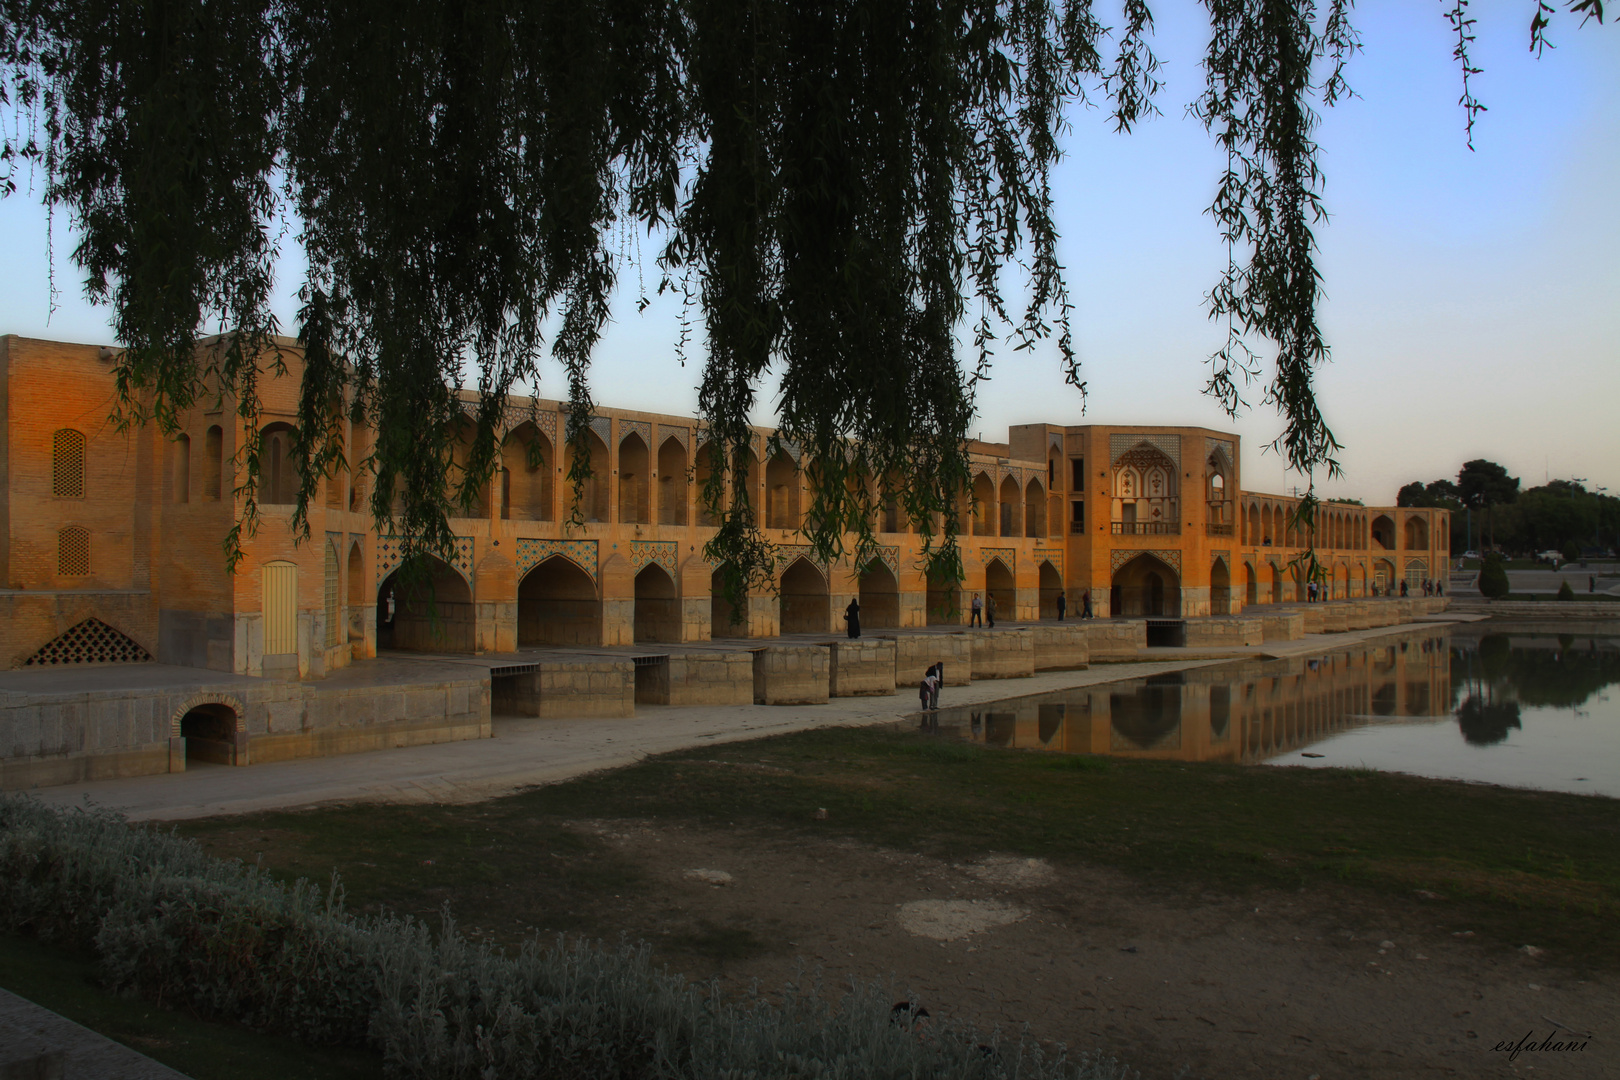 Bridges of Esfahan / Pol-e-Khajoo